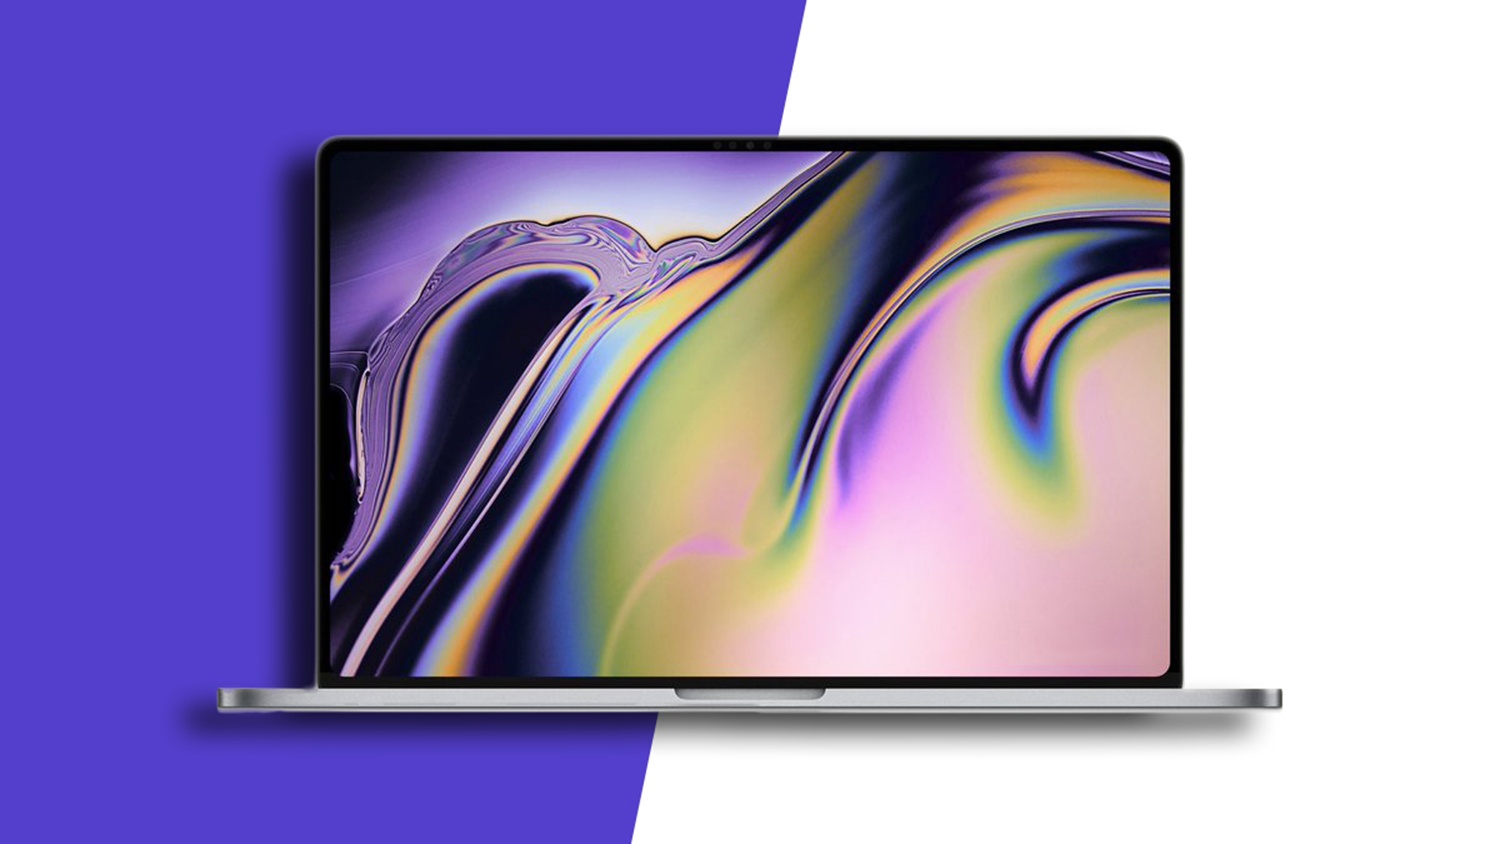 СМИ: Apple MacBook Pro с 16-дюймовым экраном будет стоить от 3000 долларов